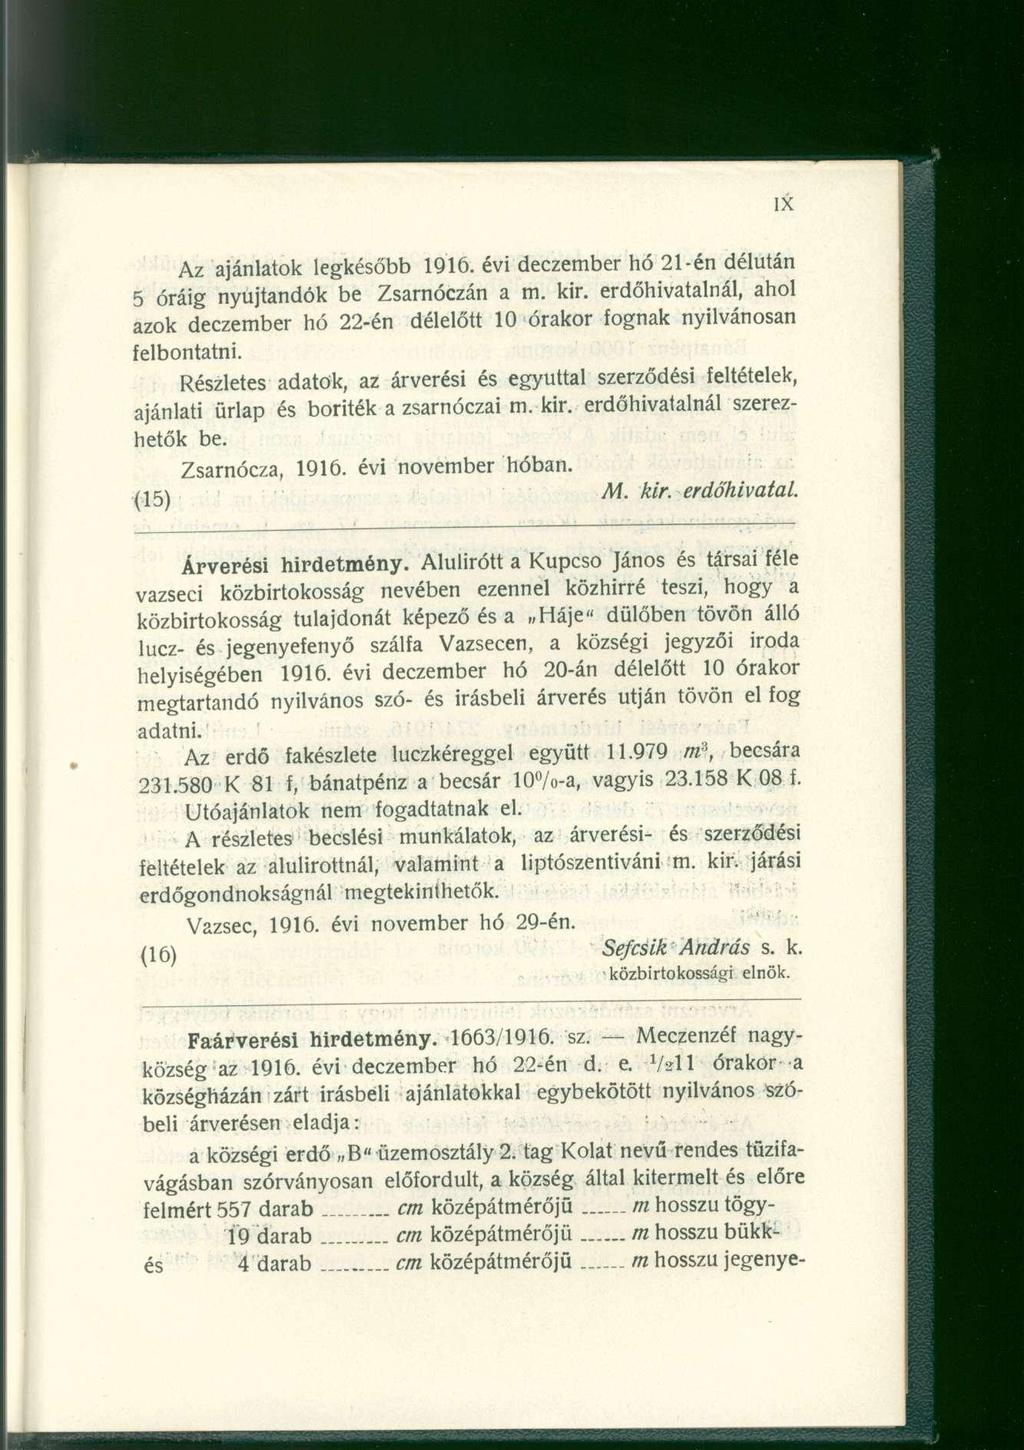 Az ajánlatok legkésőbb 1916. évi deczember hó 21-én délután 5 óráig nyújtandók be Zsarnóczán a m. kir. erdőhivatalnál, ahol azok deczember hó 22-én délelőtt 10 órakor fognak nyilvánosan felbontatni.